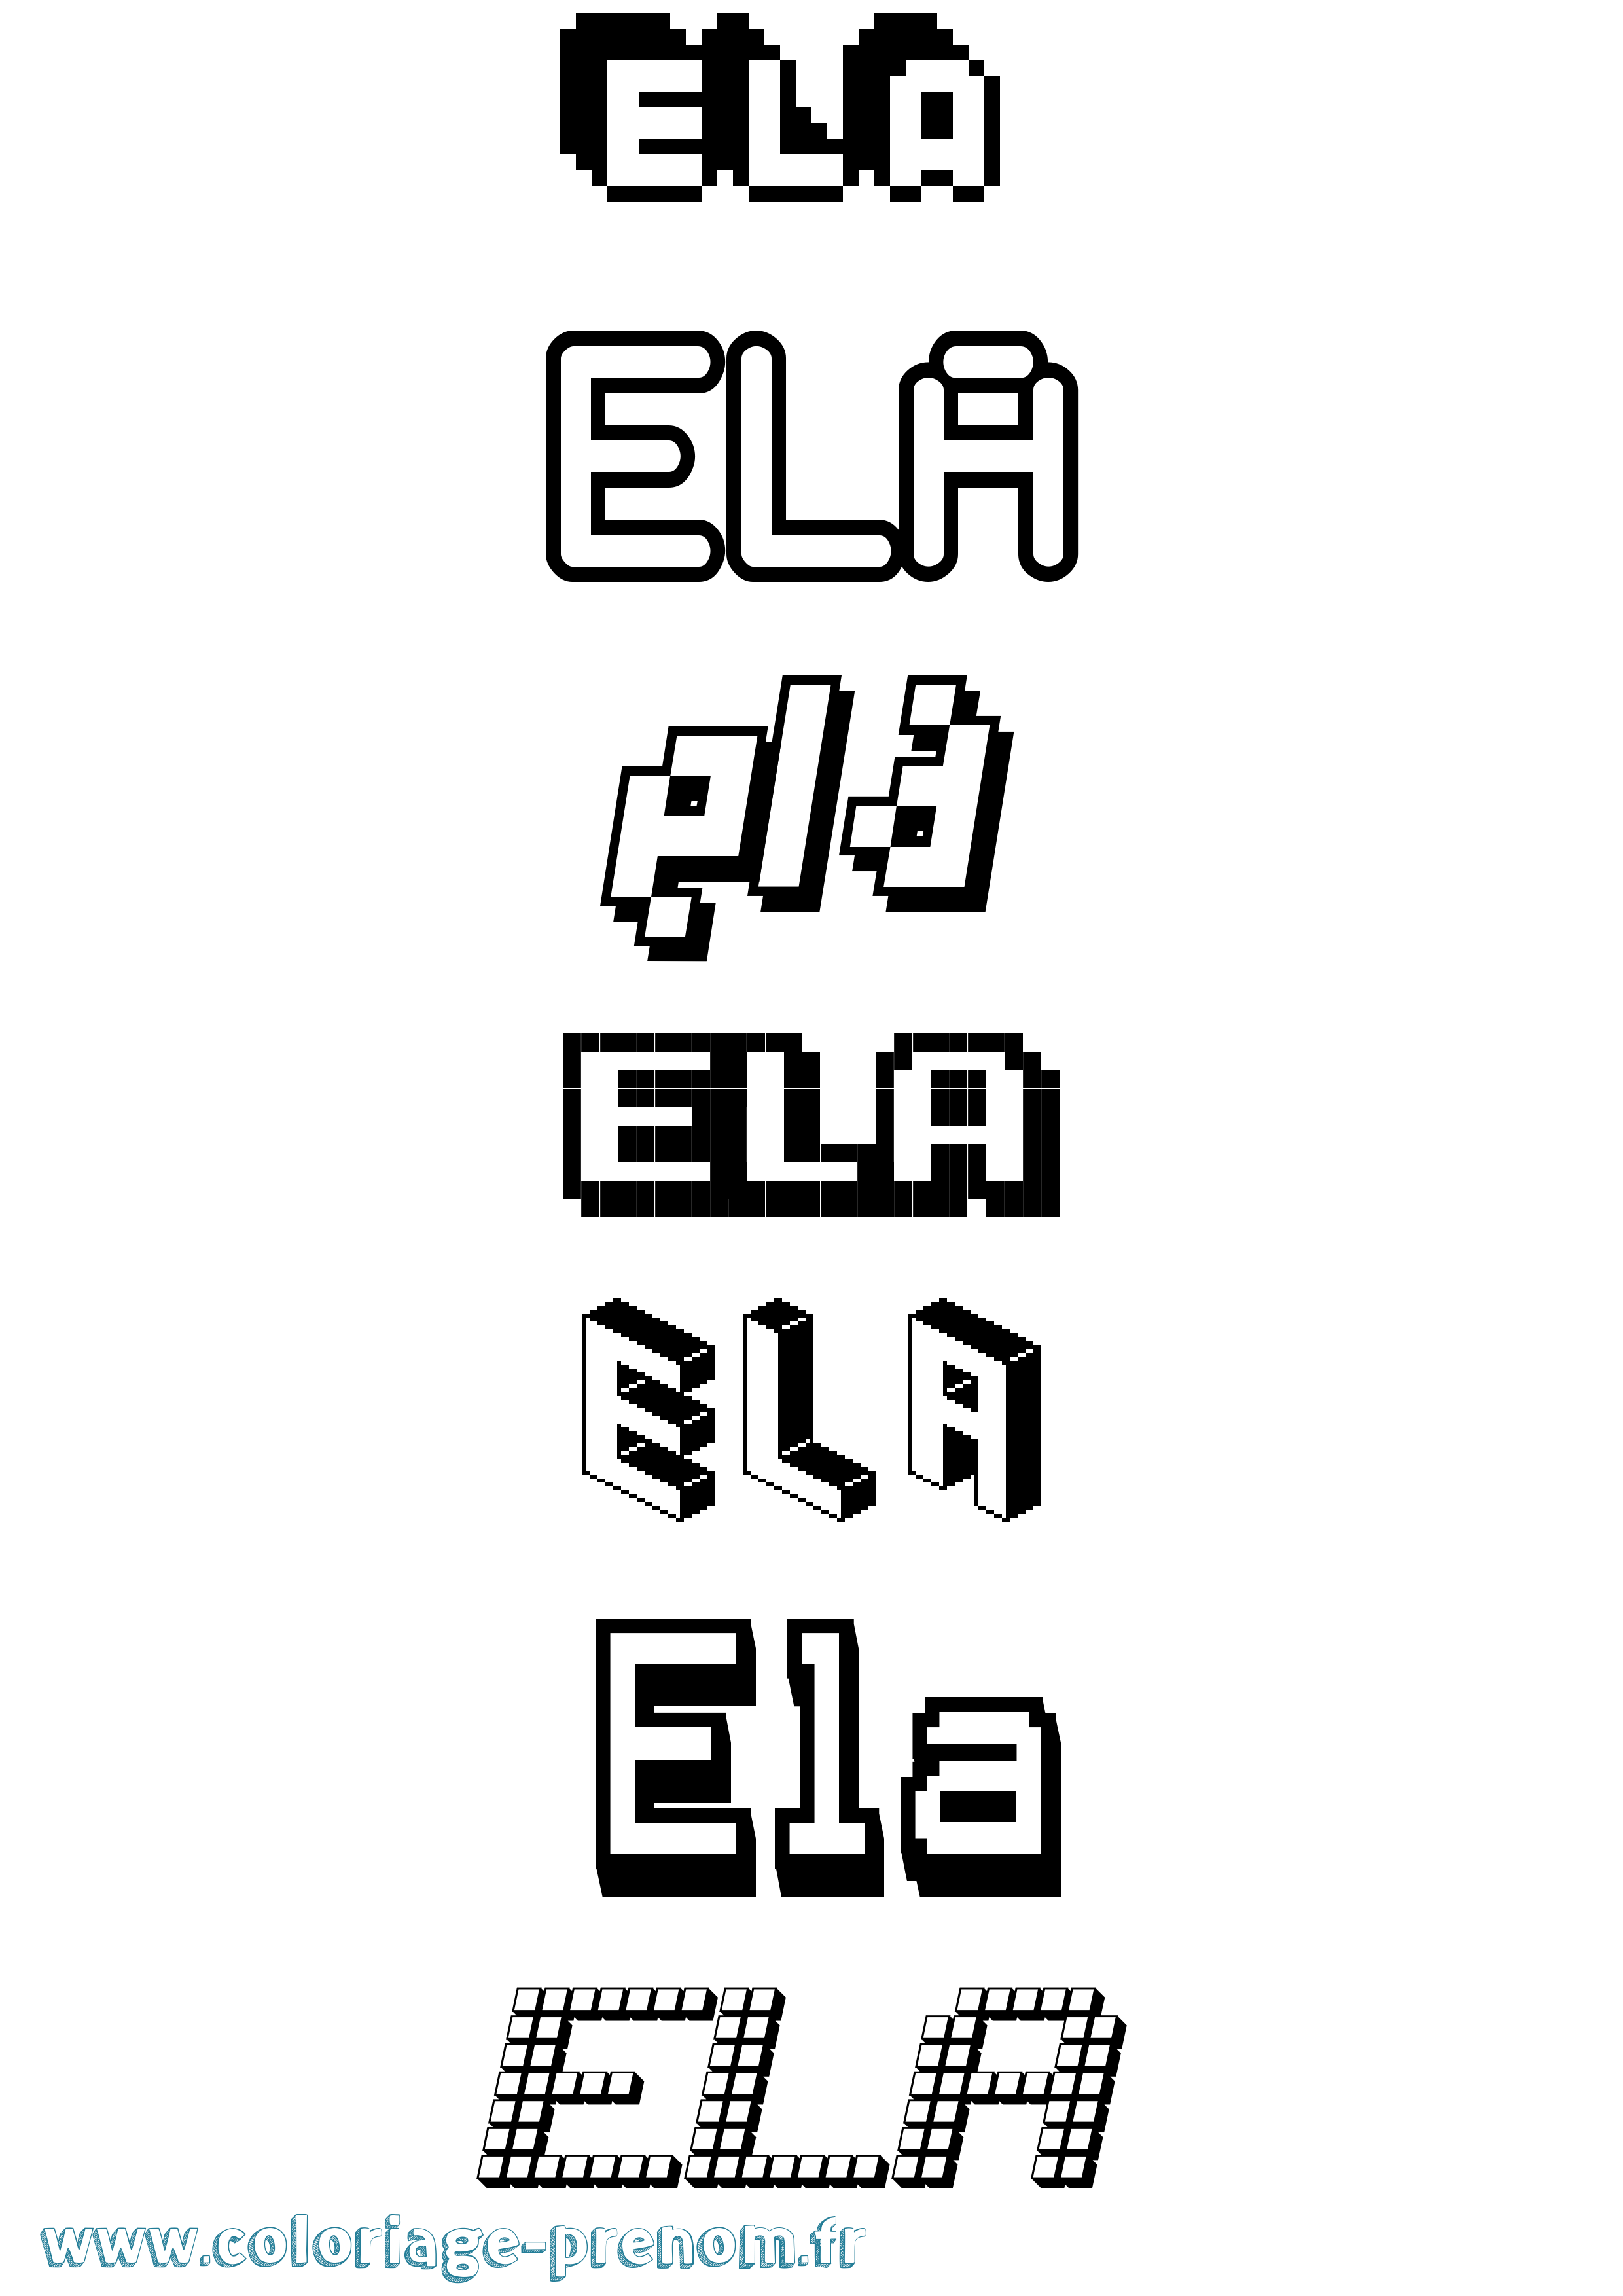 Coloriage prénom Ela